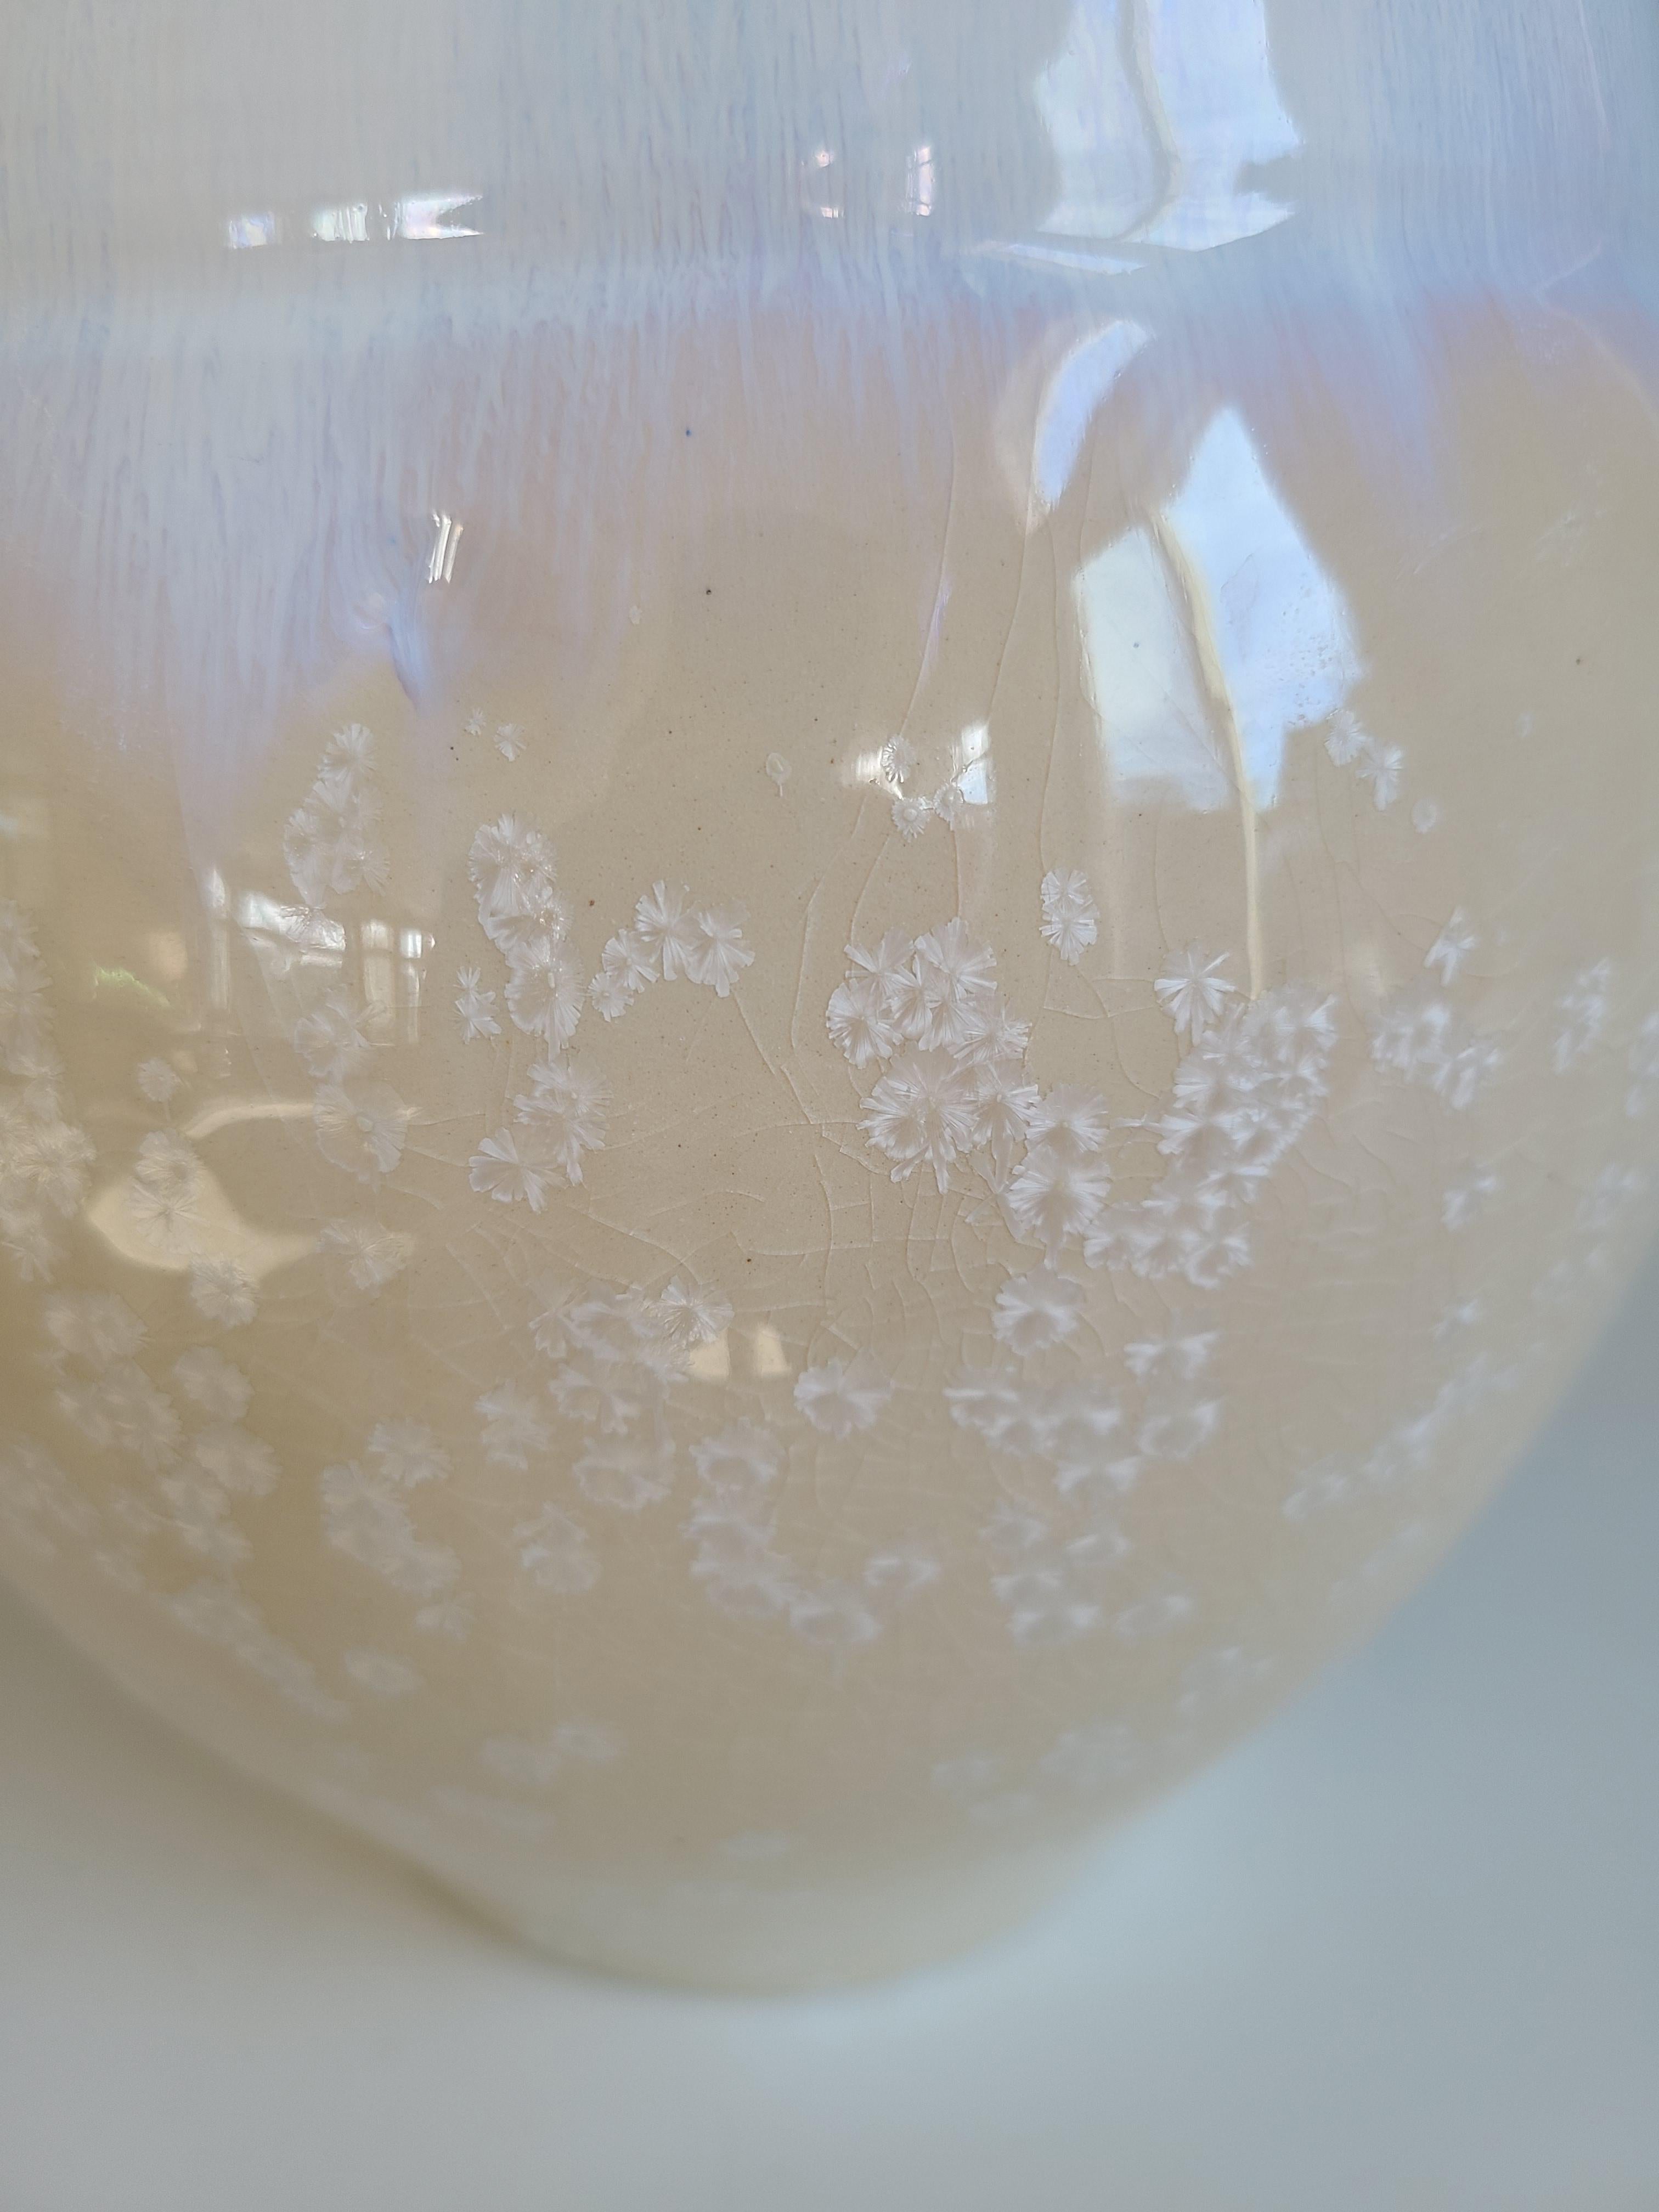 Dieses Keramikgefäß von Jon Puzzuoli ist aus Porzellan und einer kristallinen Glasur gefertigt. Es zeichnet sich durch eine helle, neutrale Farbpalette aus Creme, Weiß und Gold aus. Der untere Teil des runden, gebogenen Körpers ist cremefarben mit